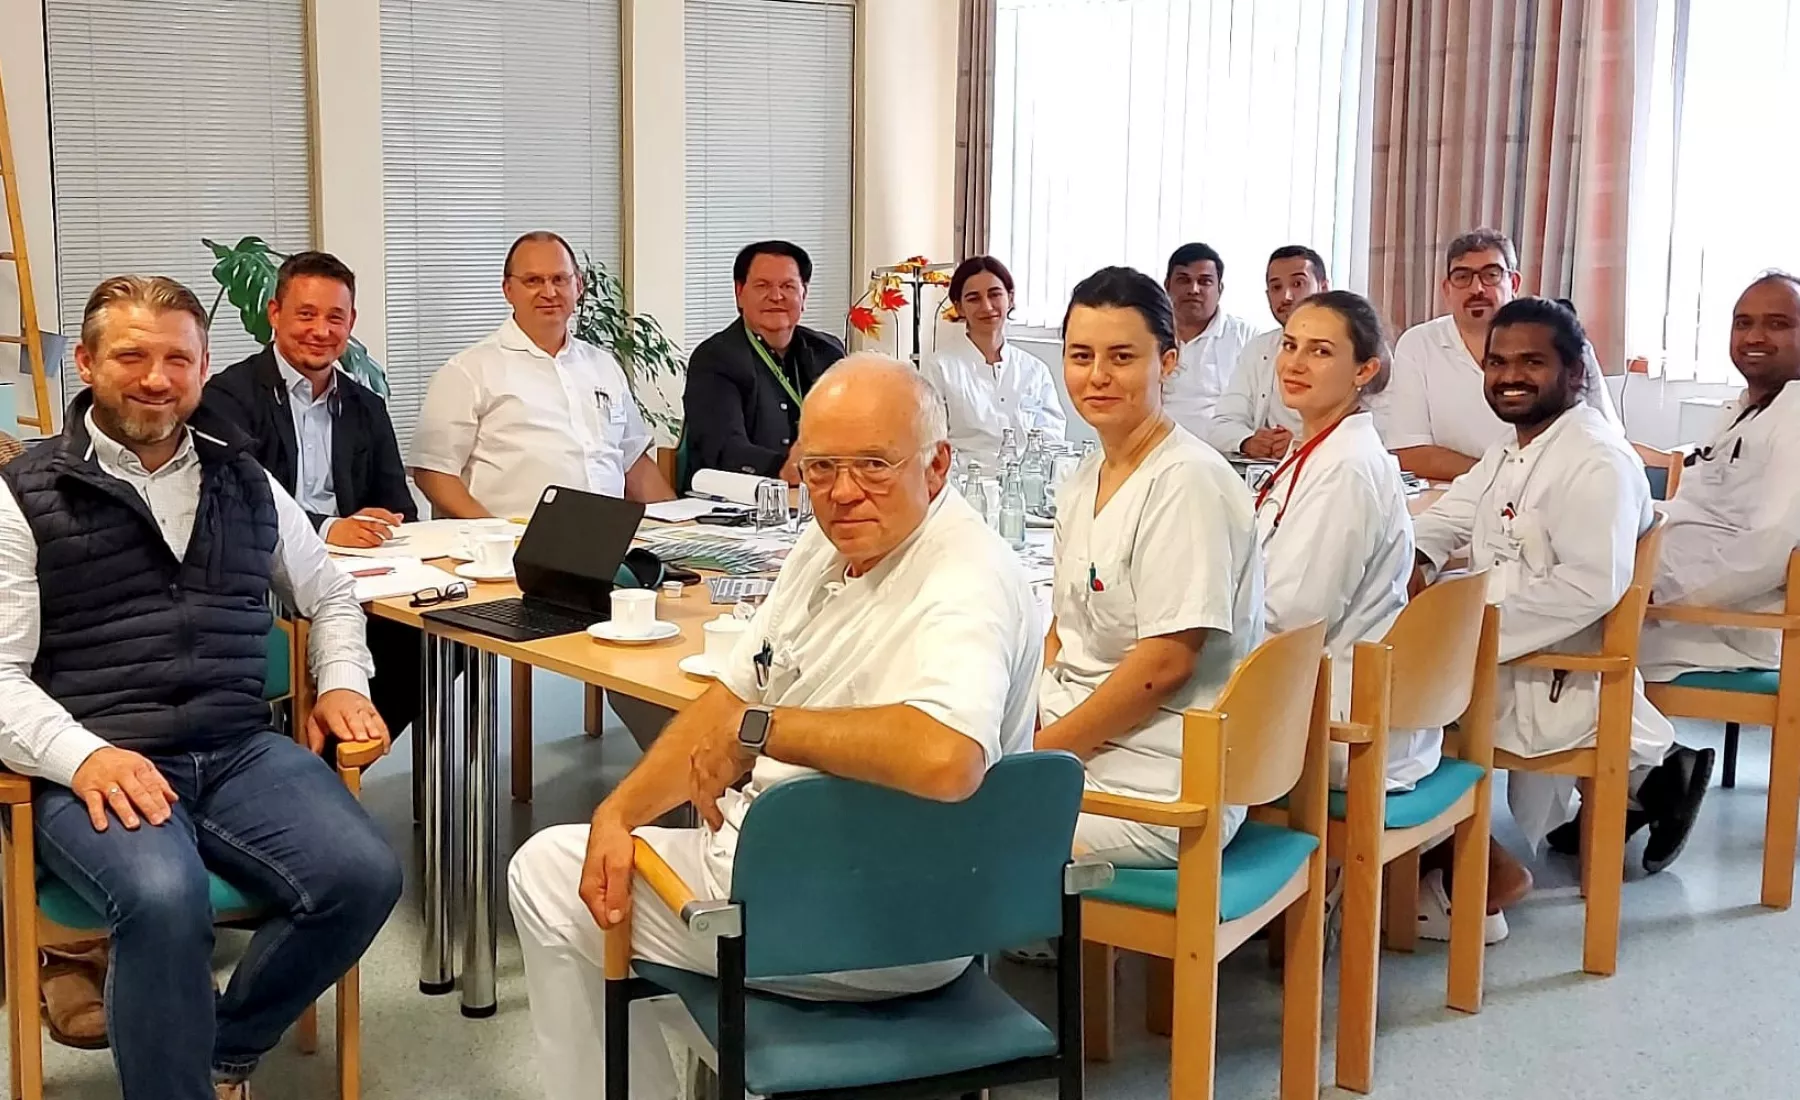 Zu einem fast zweistündigen informativen Austausch trafen sich junge internationale Mediziner mit dem Bürgermeister der Stadt Calbe, Geschäftsführer der CWG, Vertretern des IQ-Netzwerk Sachsen-Anhalt sowie der Leitung des Saale-Krankenhauses in Calbe.